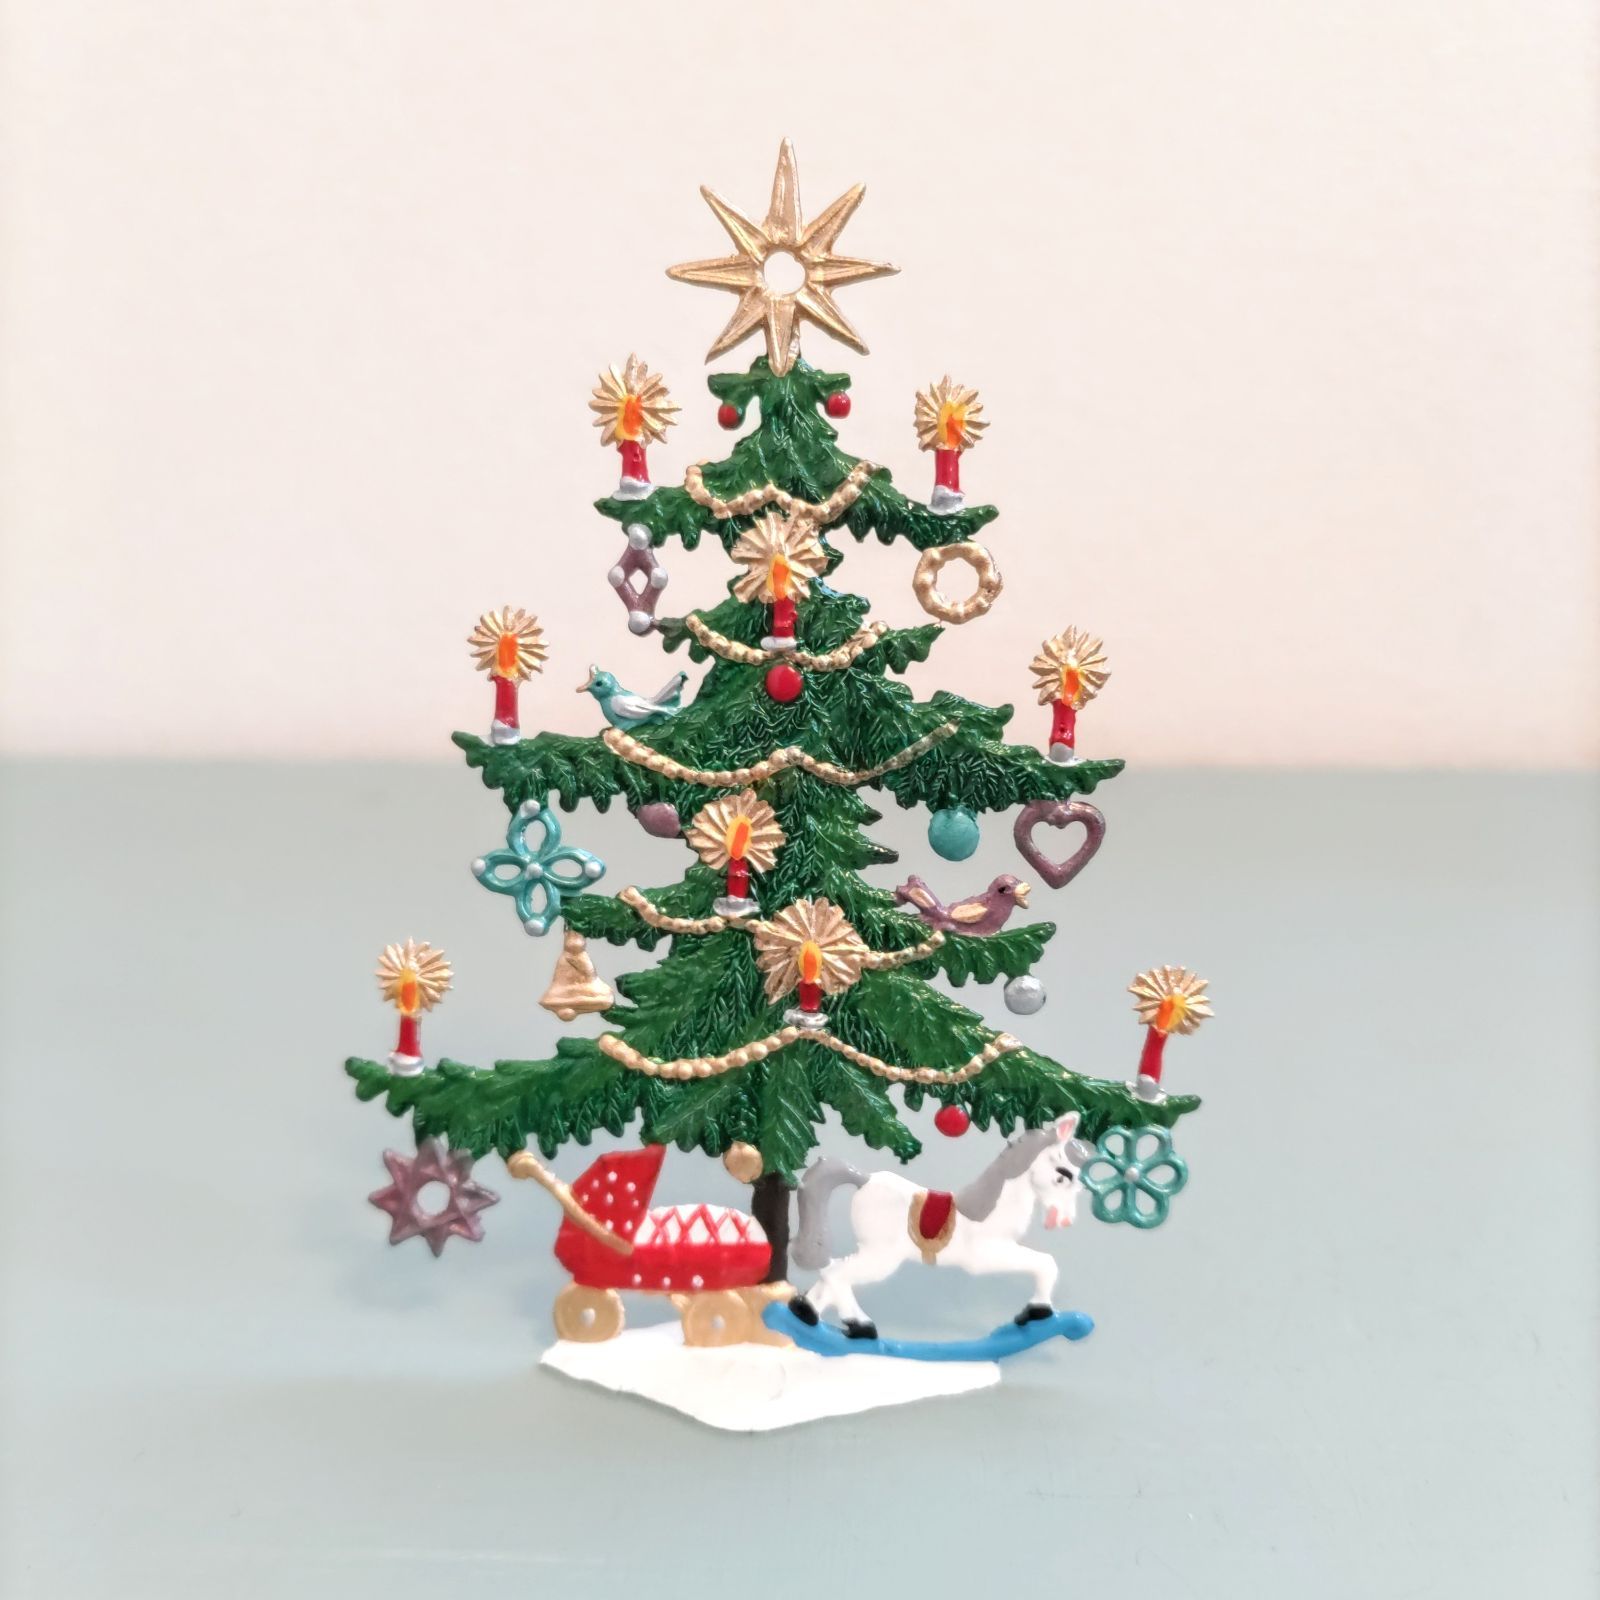 クリスマスツリーB 小 錫製 ドイツ工芸品 ドイツ雑貨 クリスマス飾り